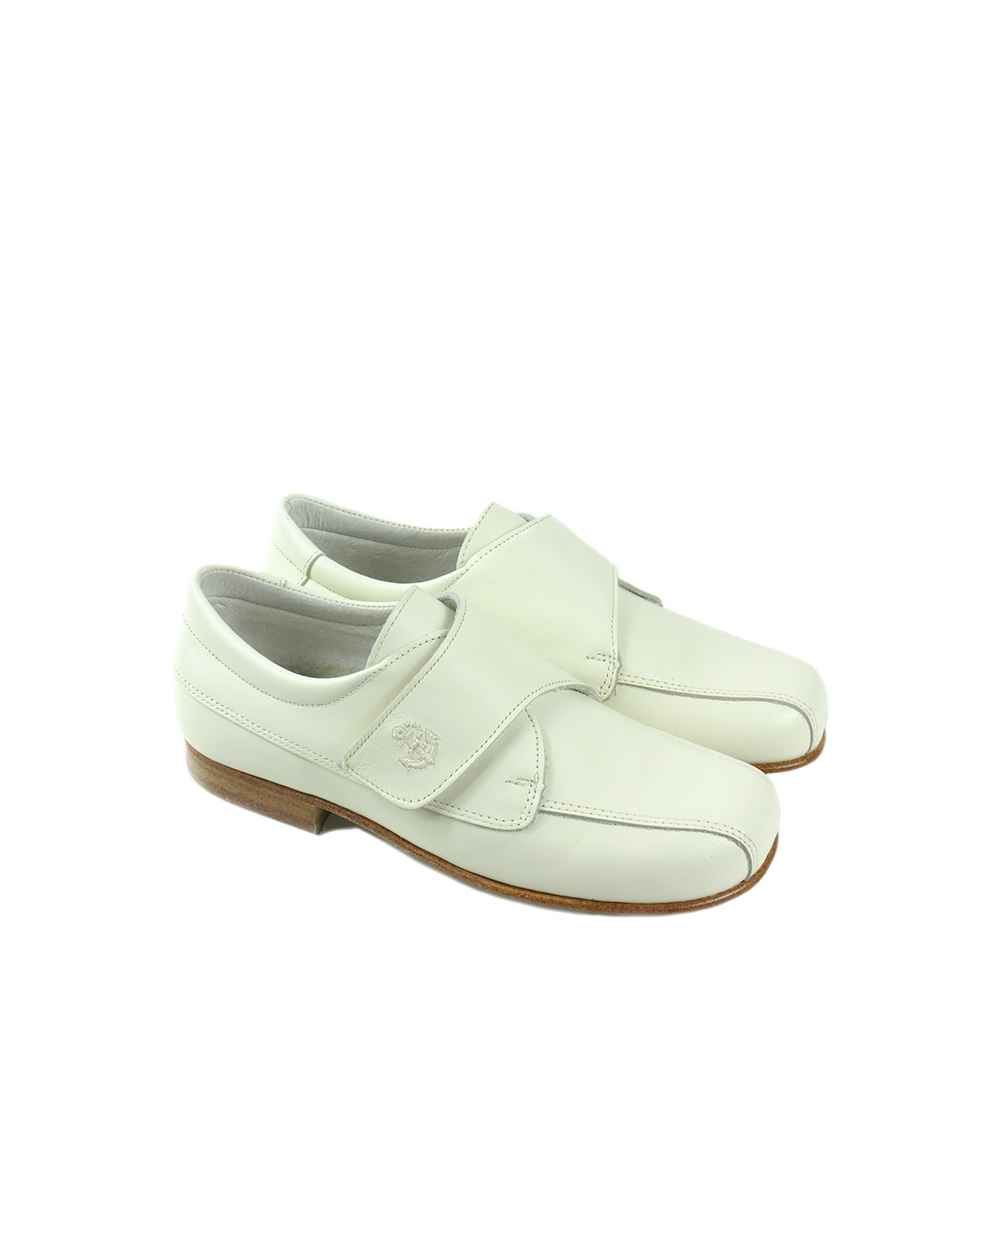 Dos zapatos de niño blancos para niños con cierres de velcro para